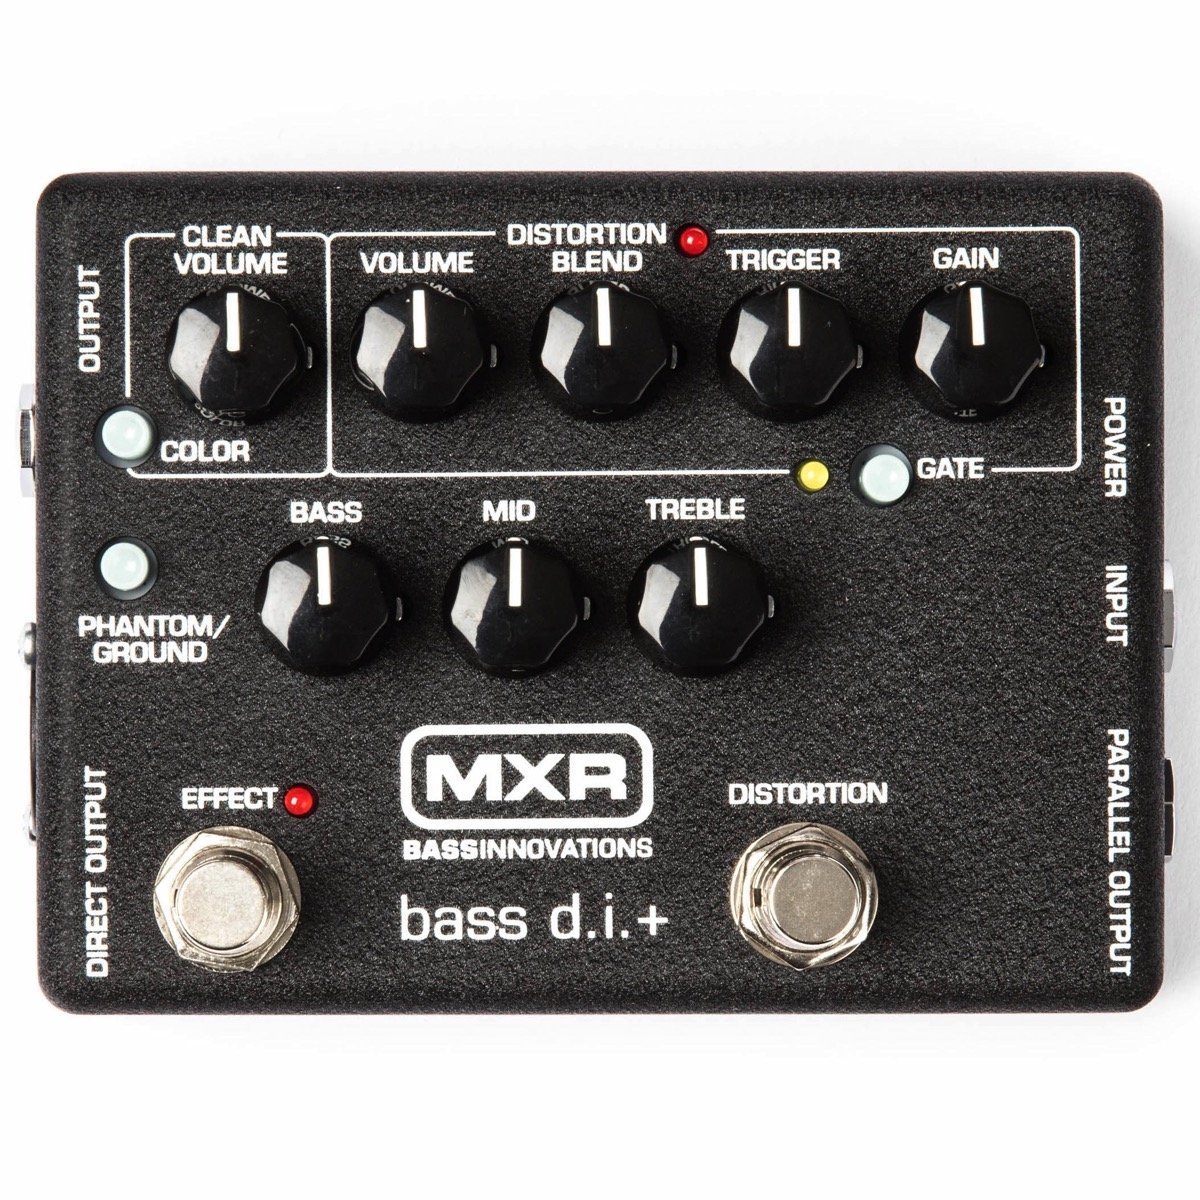 MXR M80 bass d.i.+